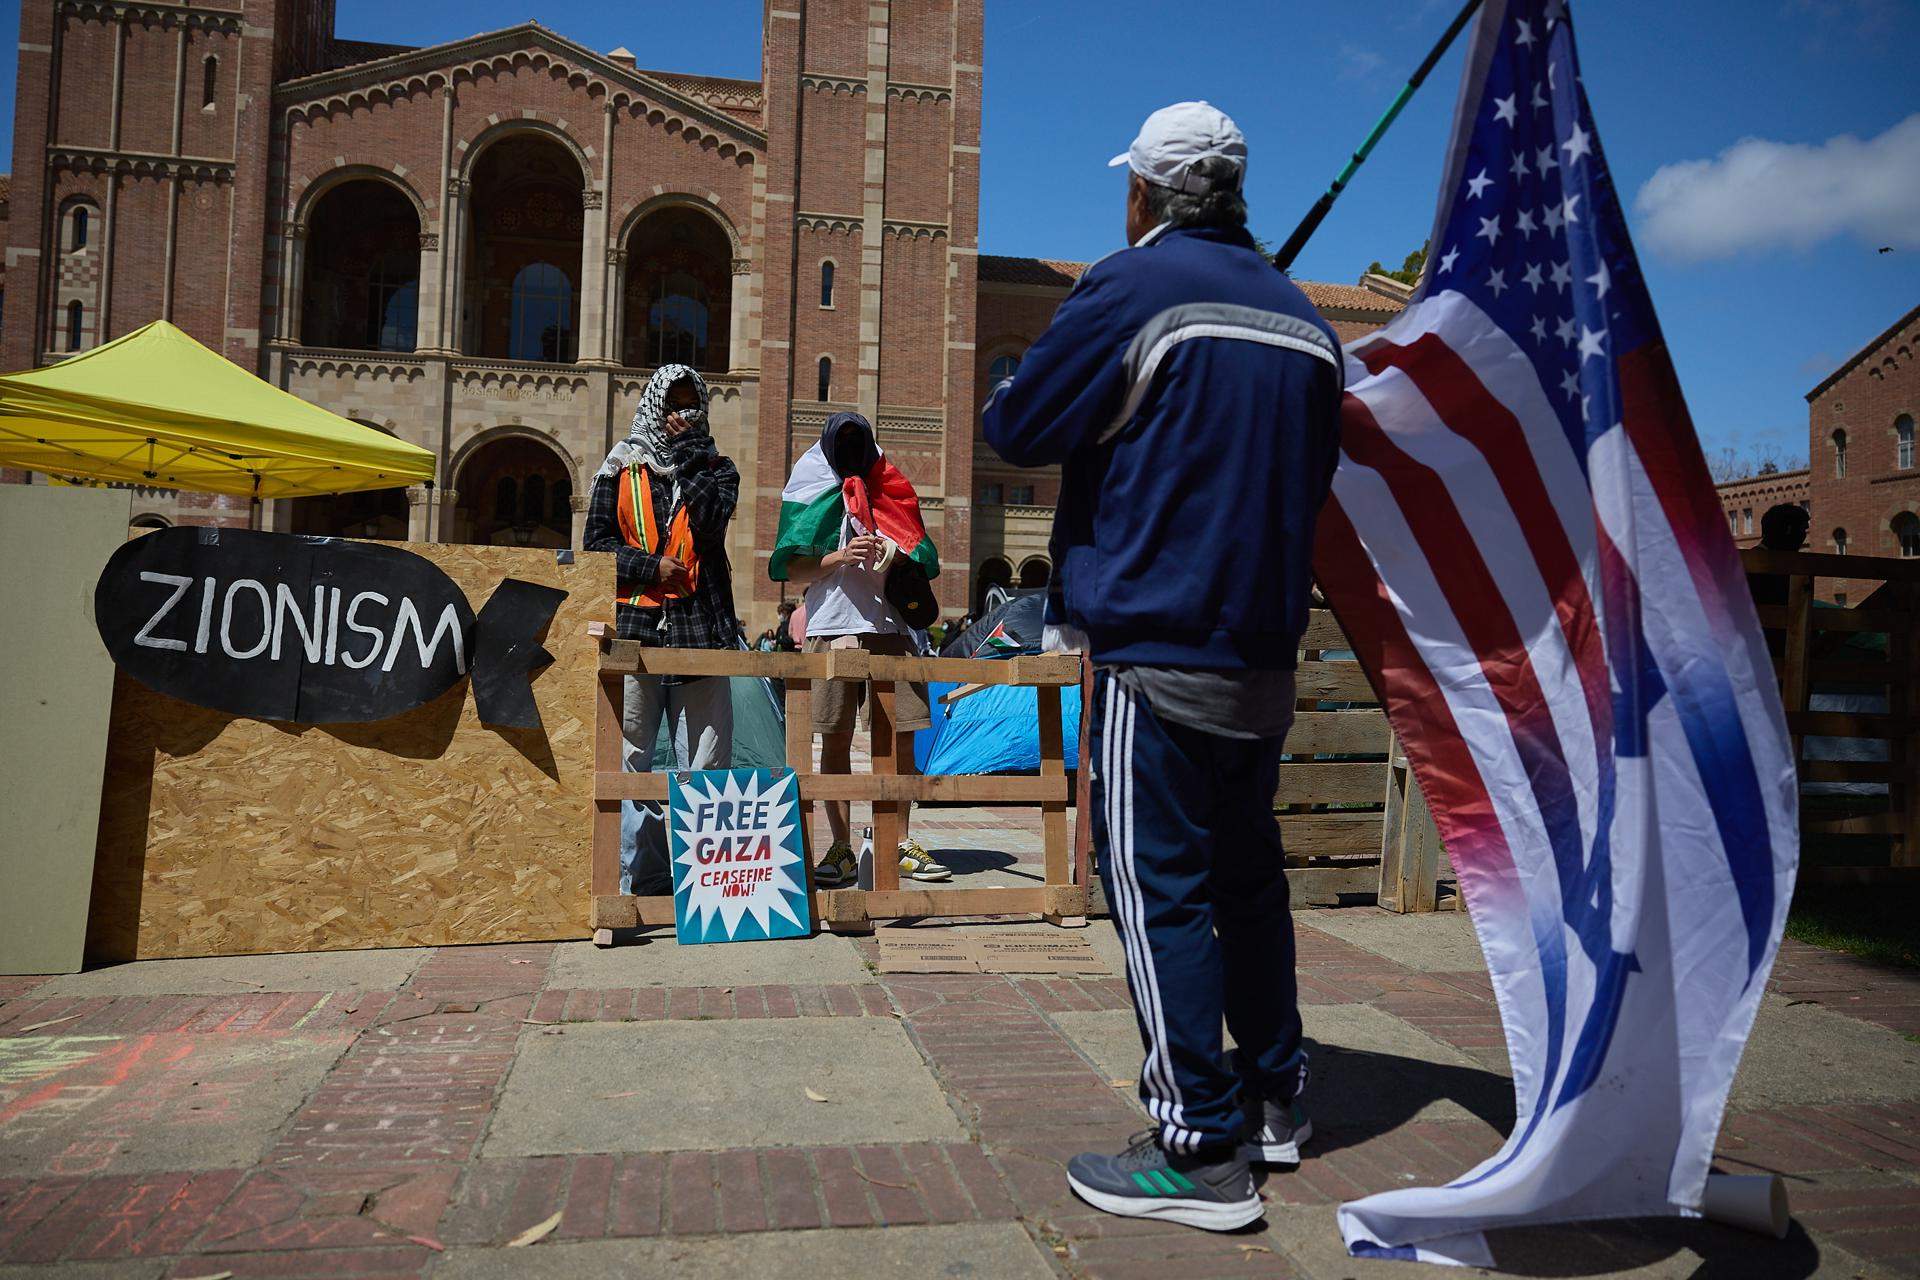 Enfrontaments entre estudiants proisraelians i propalestins a la Universitat de Califòrnia